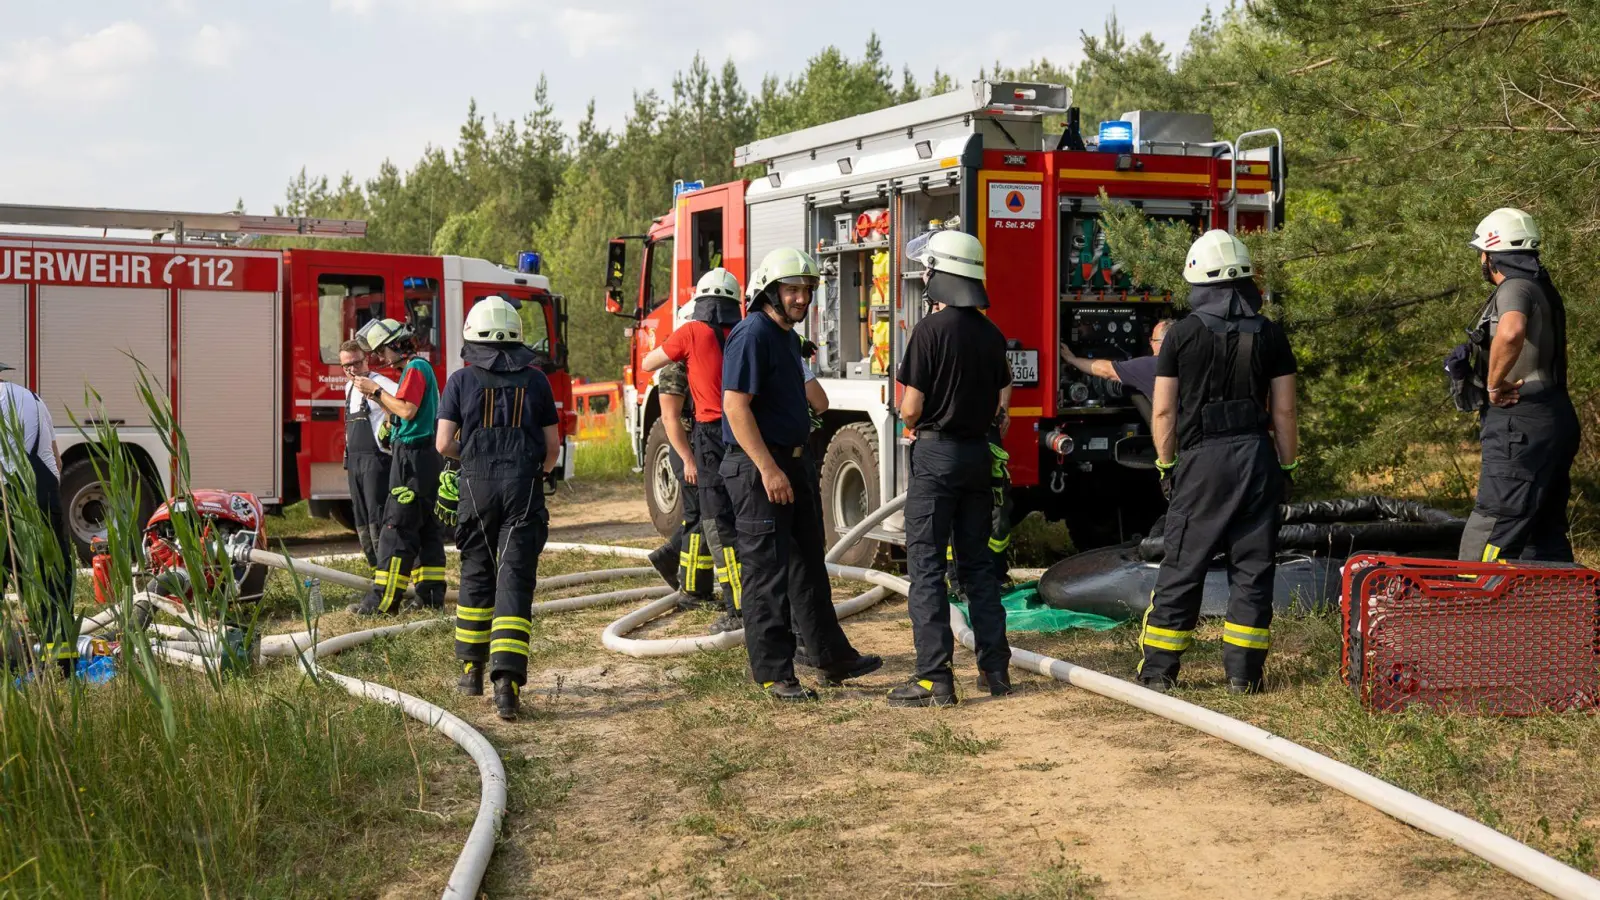 Einsatzkräfte der Feuerwehr sind bei einem Waldbrand in Hainburg im Einsatz. (Foto: Armin Lerch/5vision.media/dpa)